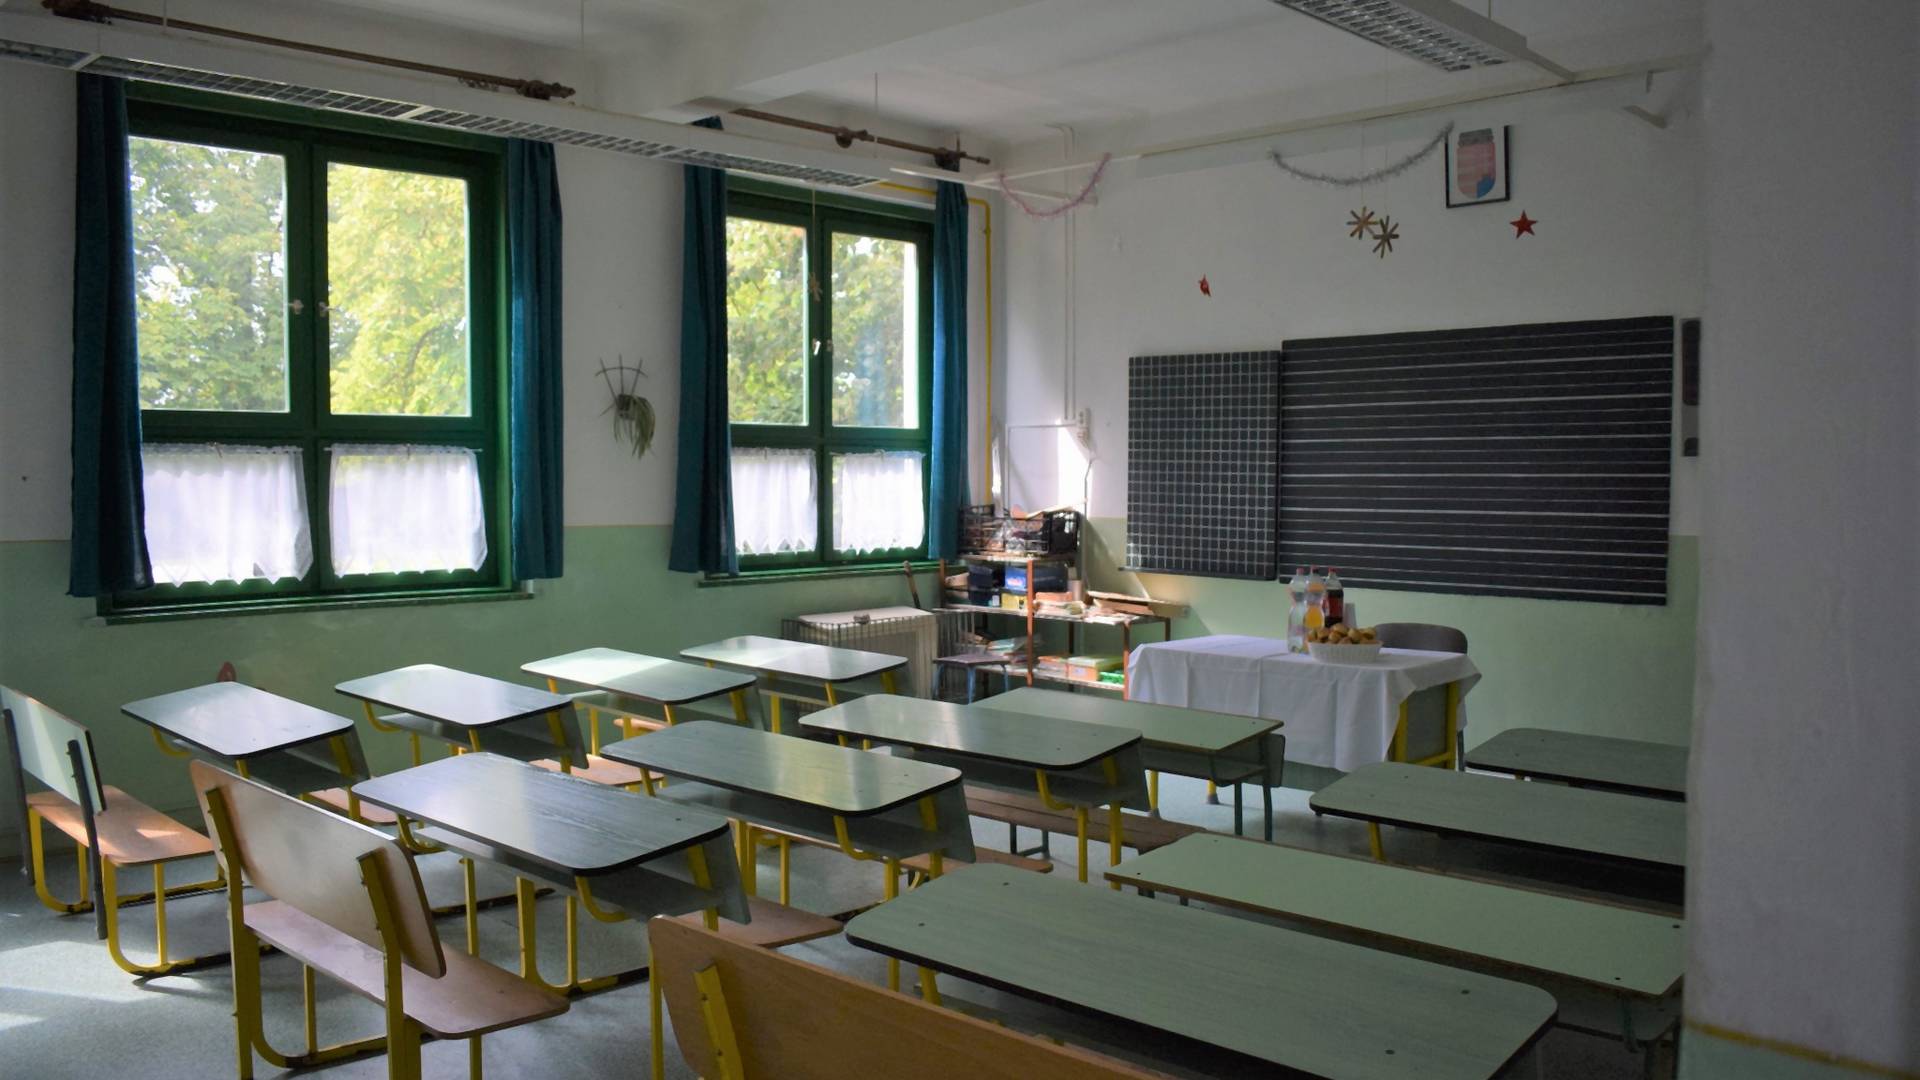 Az általános iskolás magyar gyerekek negyede túlsúlyos és minden tizedik alultáplált